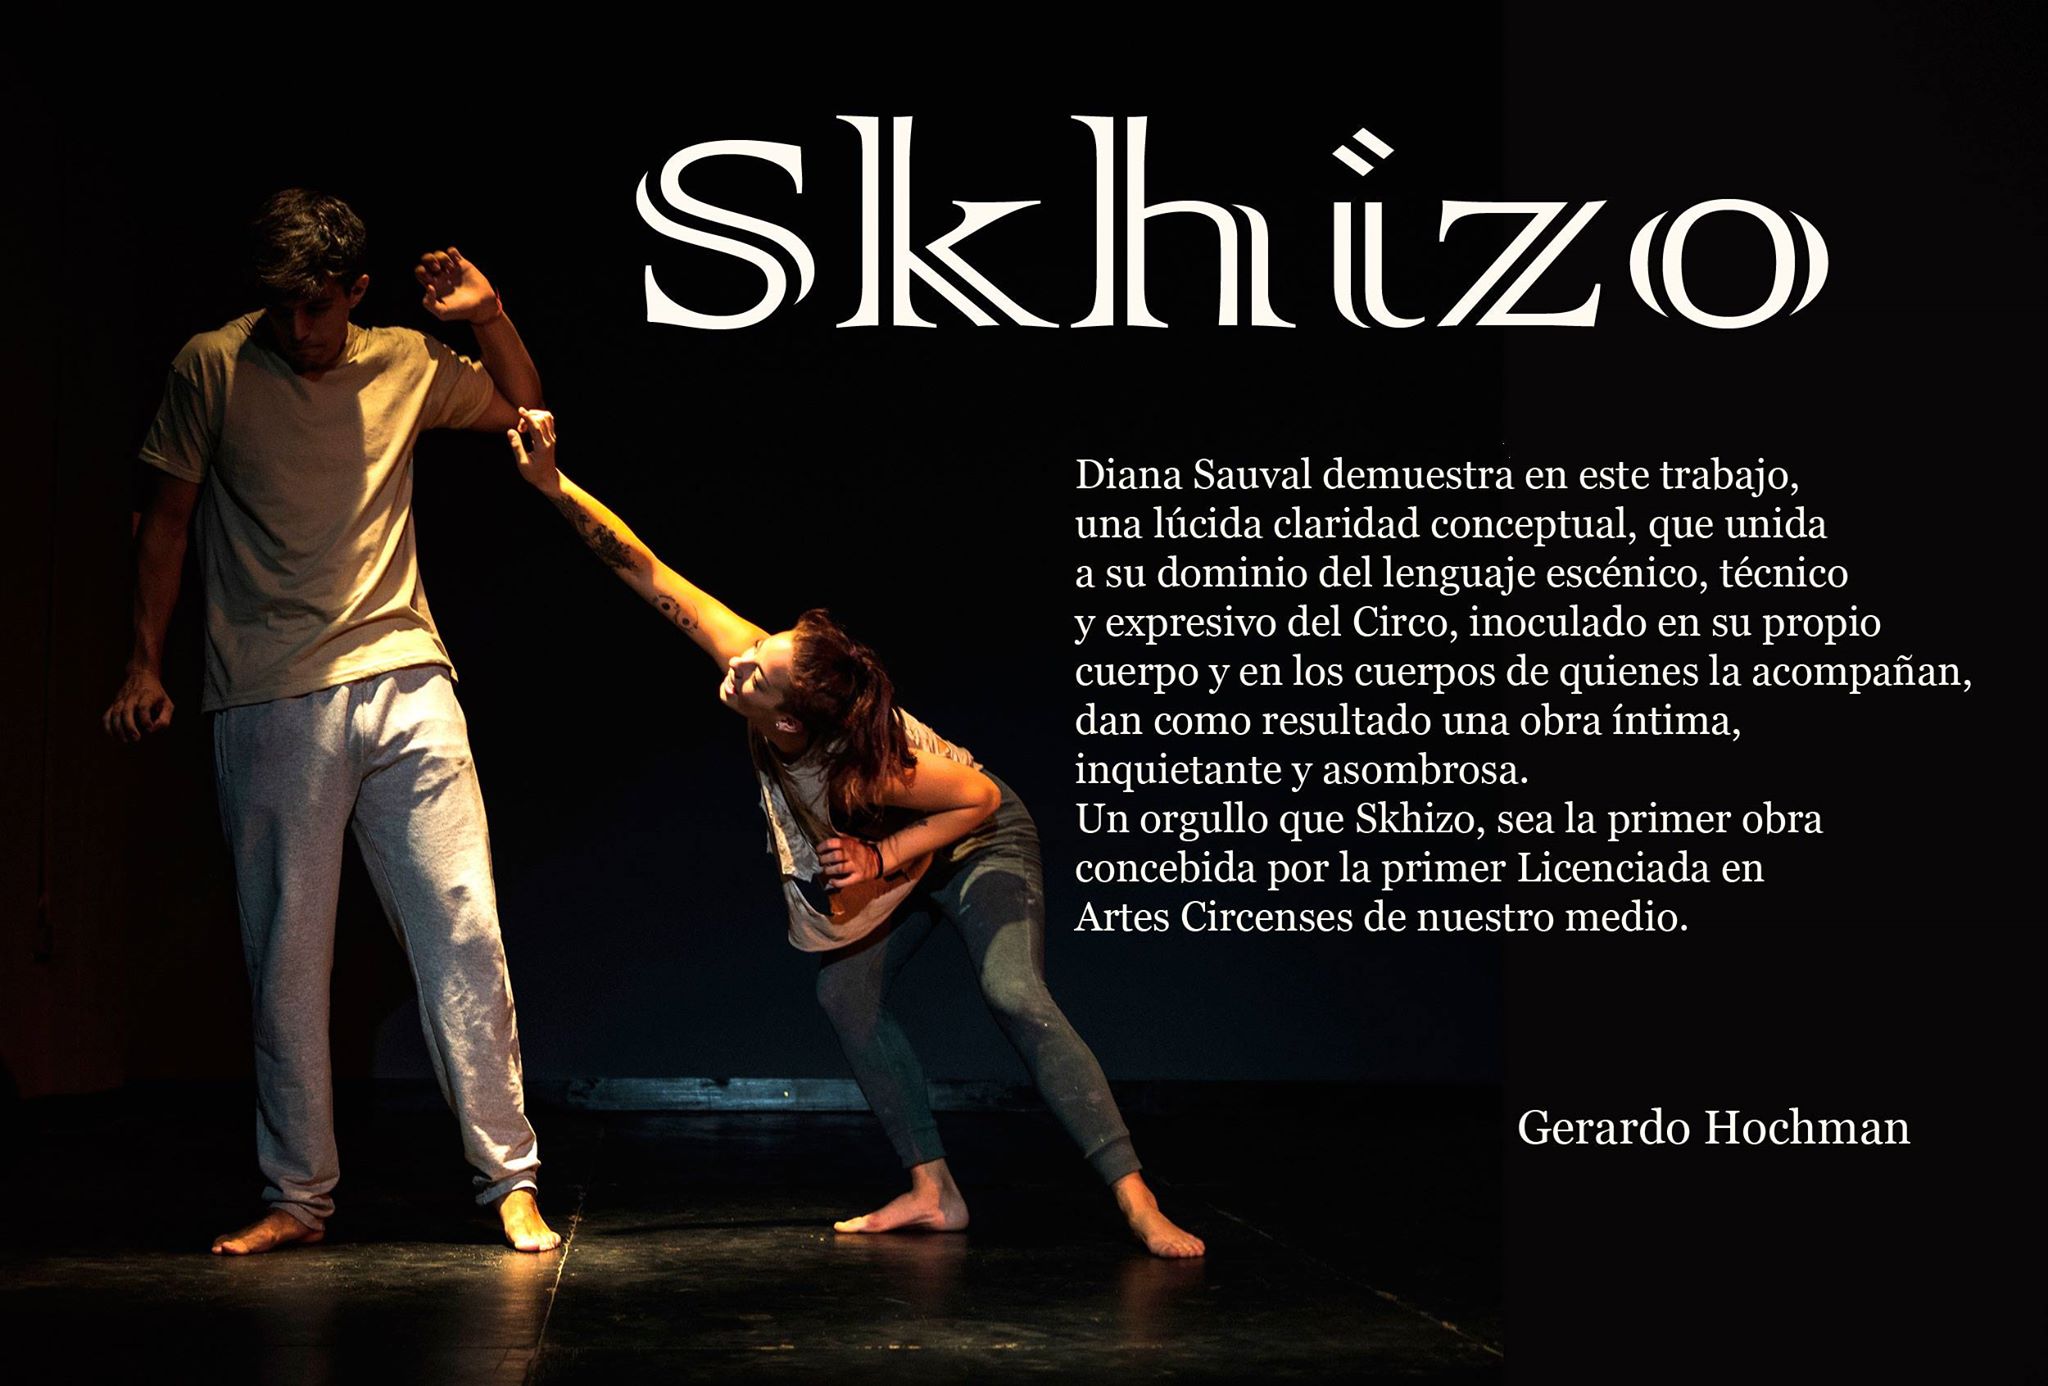 Skhizo 2019 - de Diana Sauval - Crítica de Gerardo Hochman